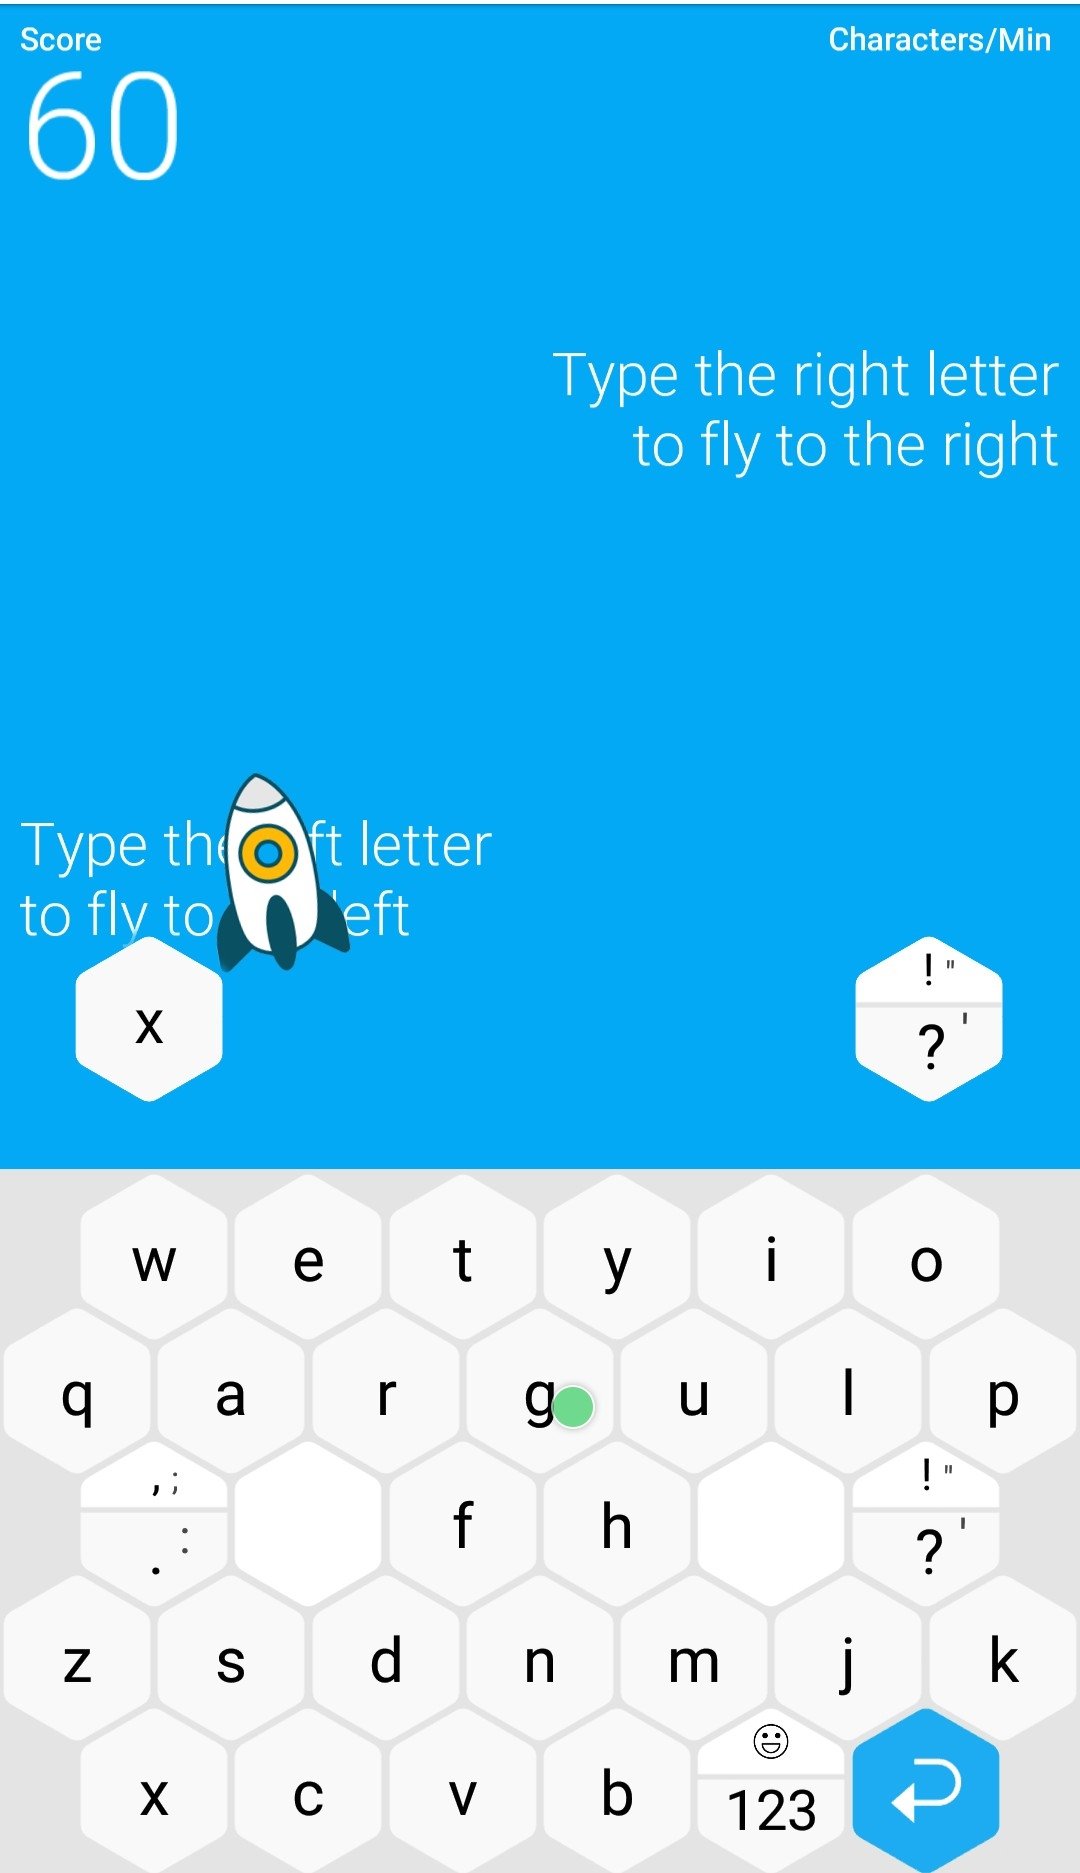 Como escrever rápido no celular com o aplicativo de teclado Typewise